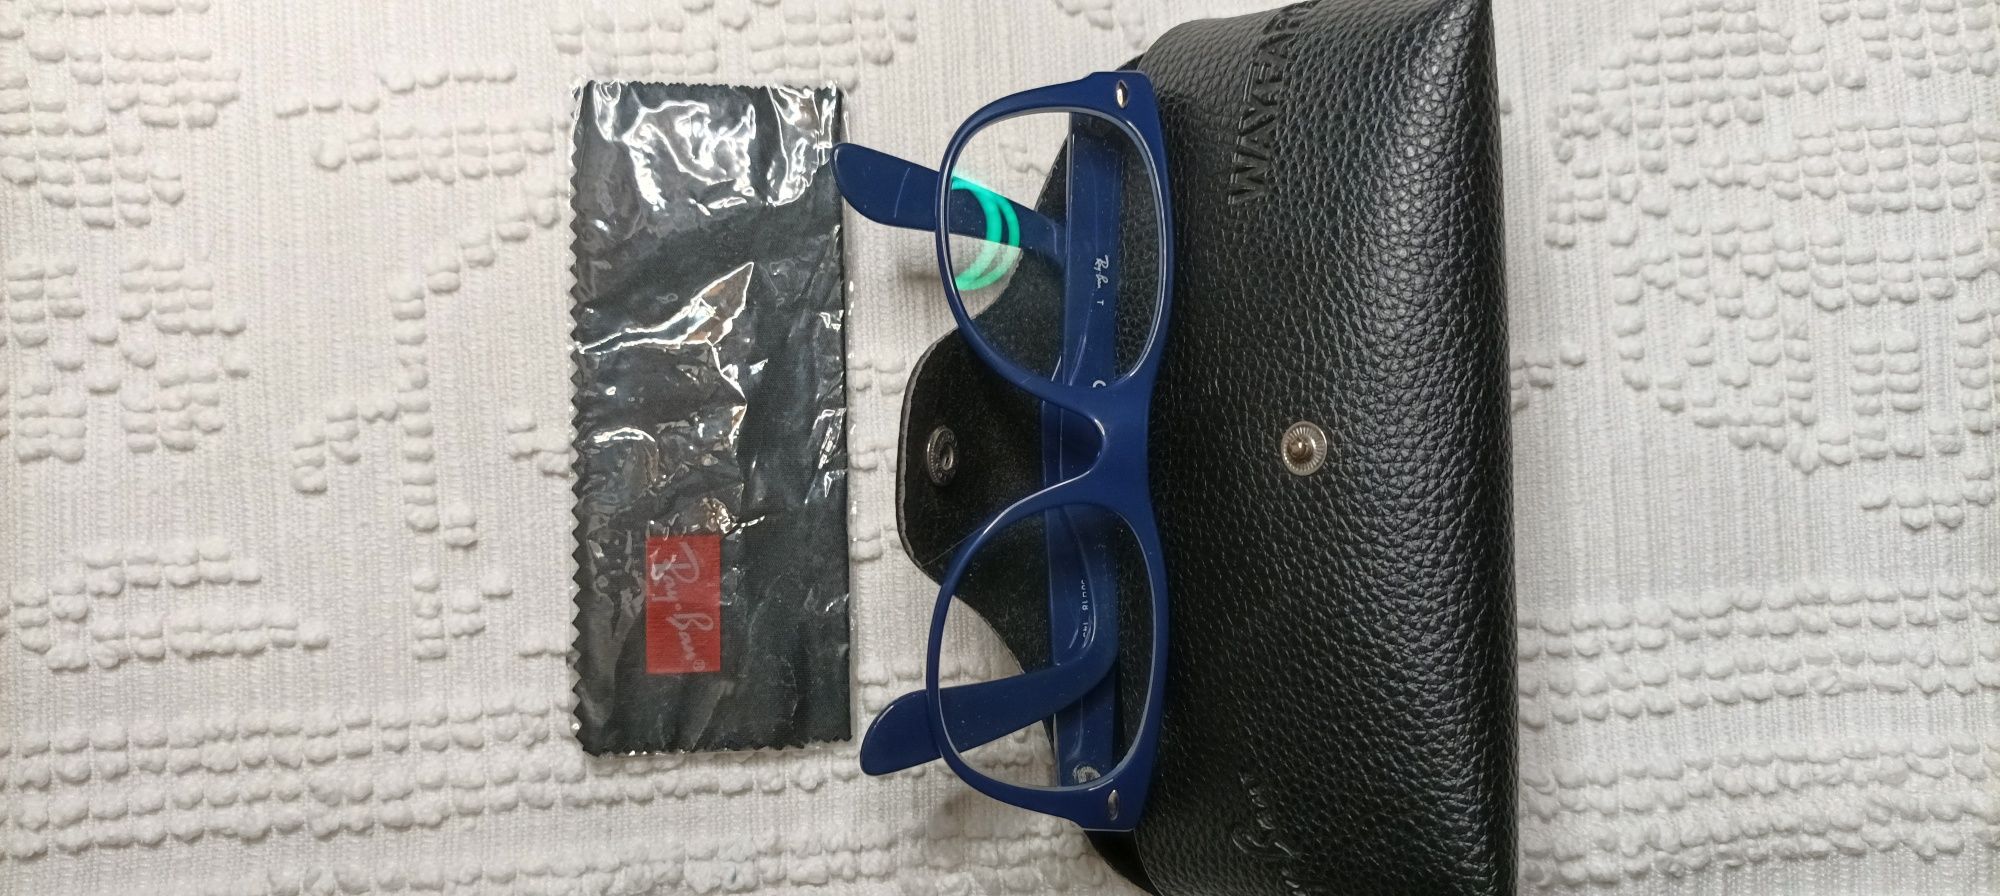 Vendo óculos da marca Ray-Ban, originais, em azul escuro, com bolsa da